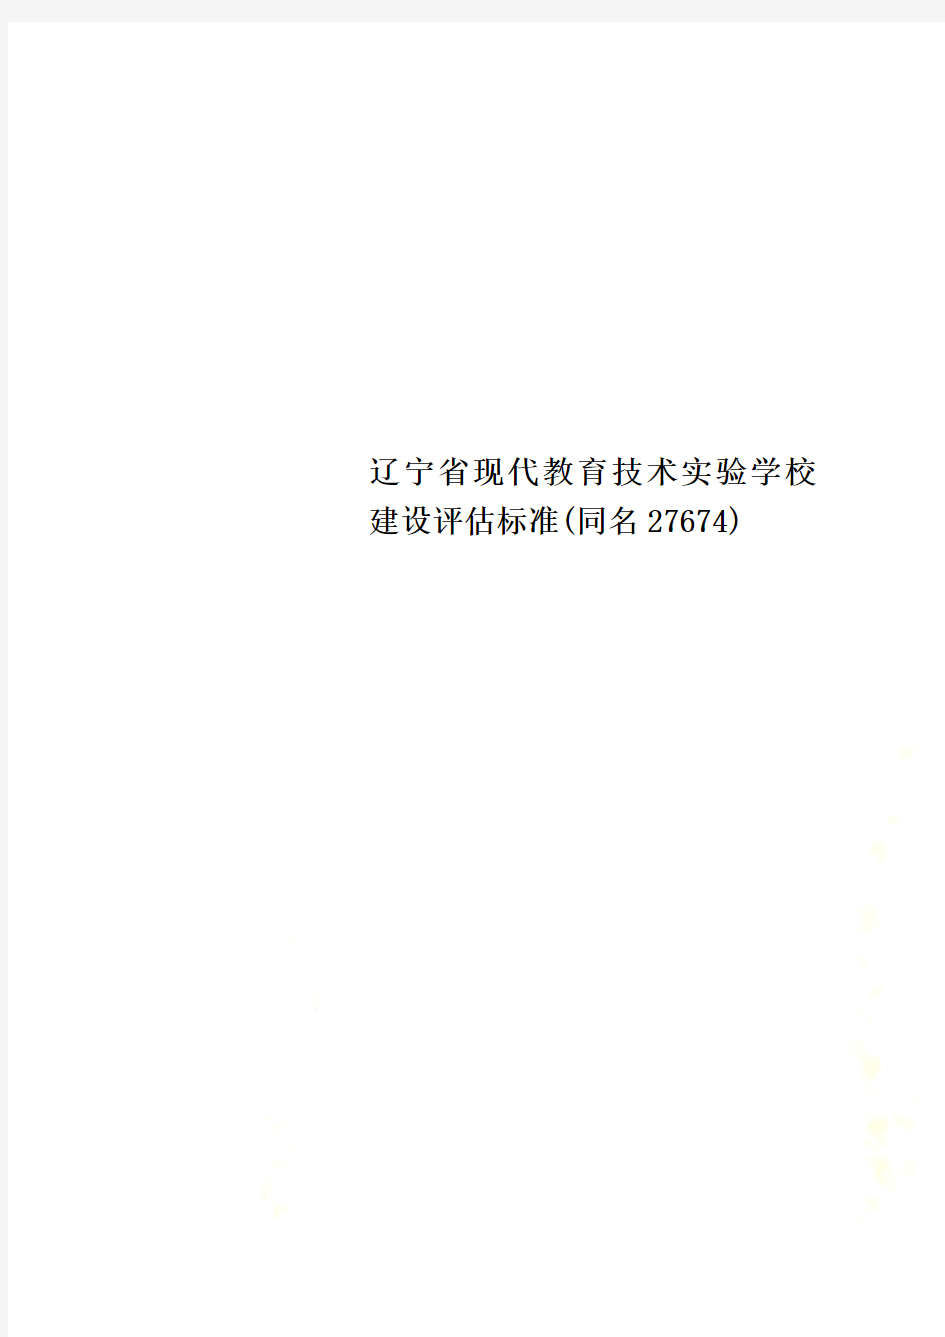 辽宁省现代教育技术实验学校建设评估标准(同名27674)